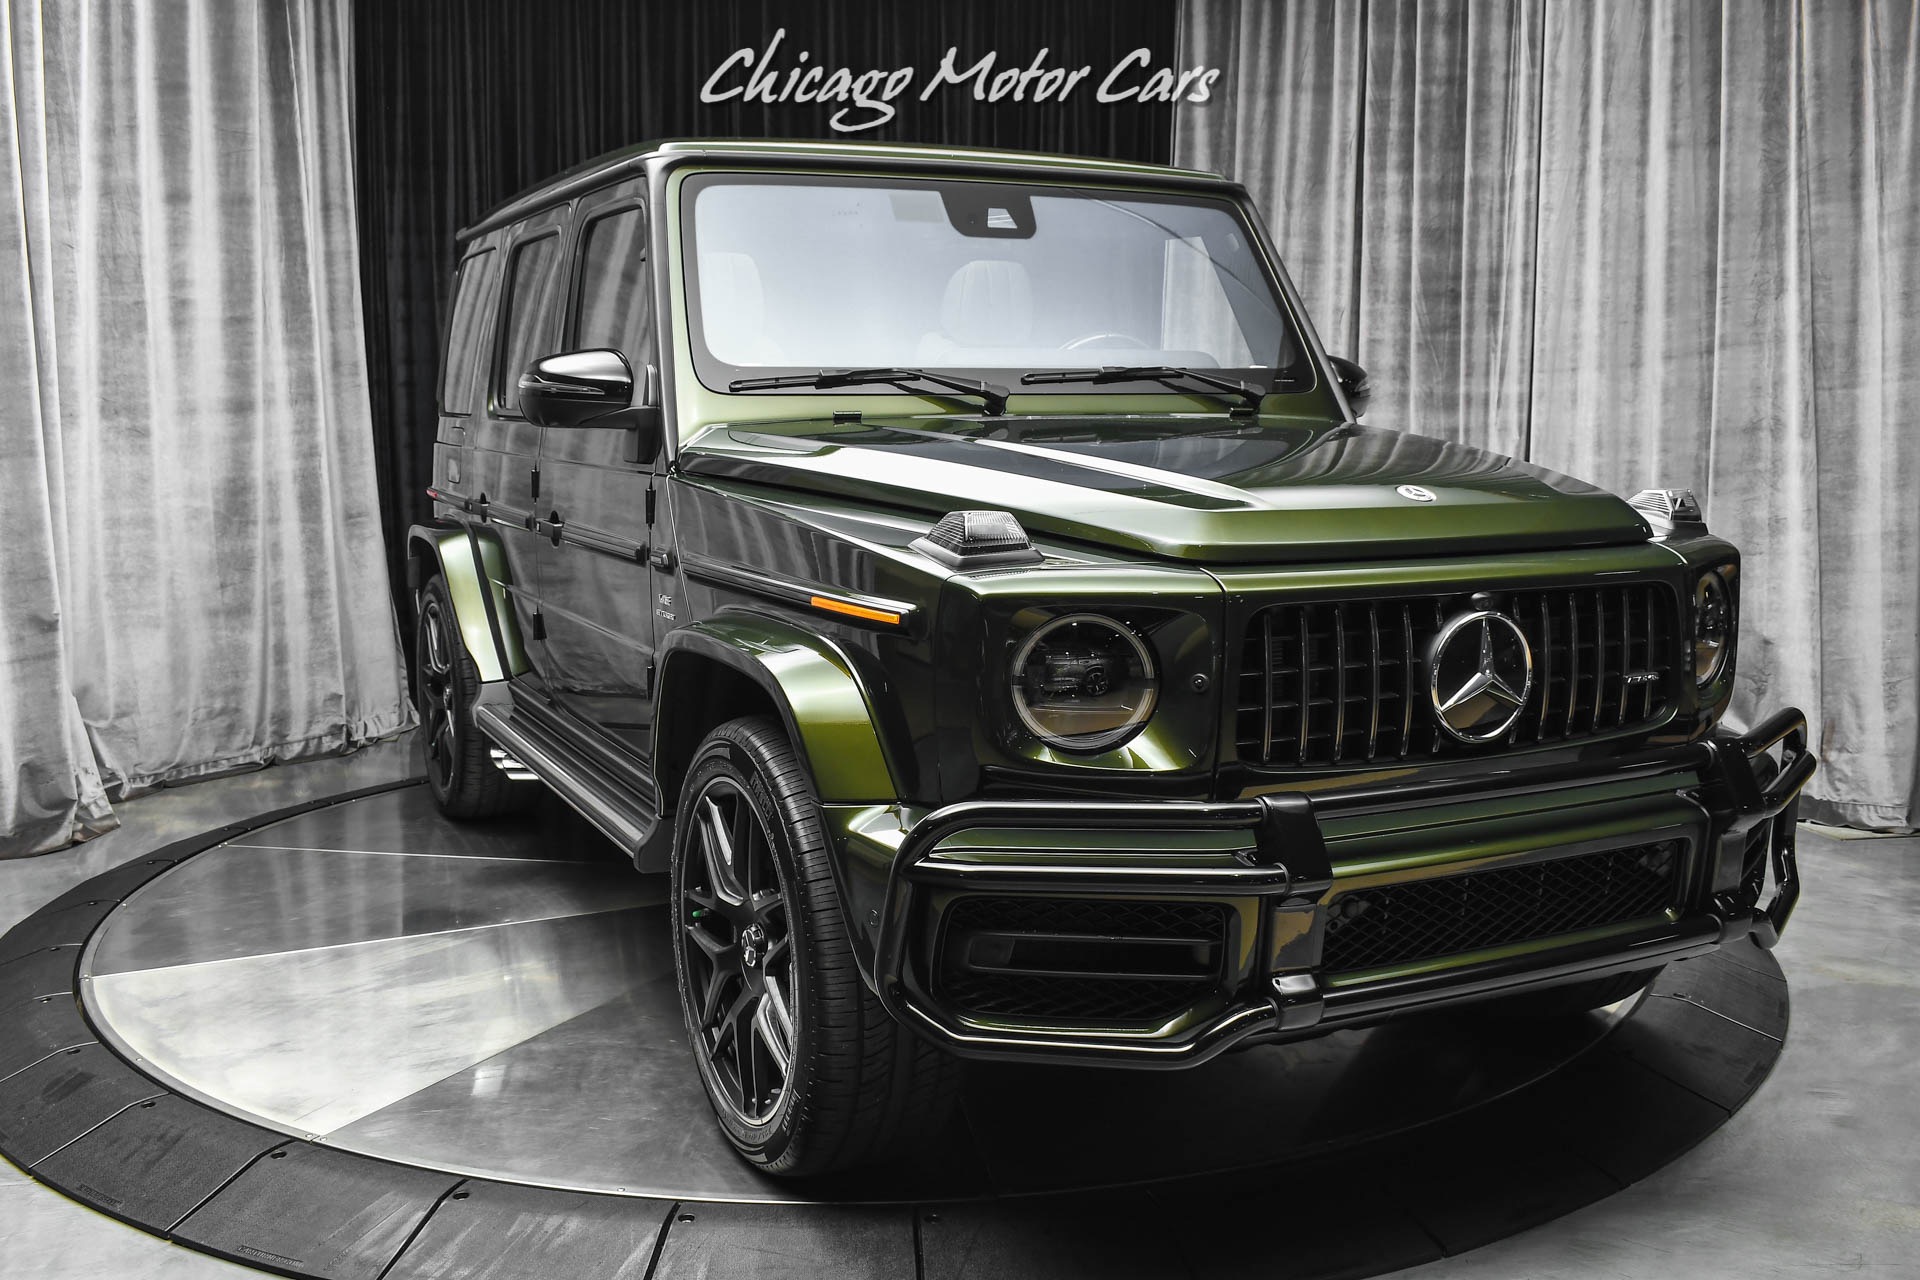 Used-2021-Mercedes-Benz-G63-AMG-G-Manufaktur-Olive-Metallic-Interior-Package-PLUS-Carbon-Fiber